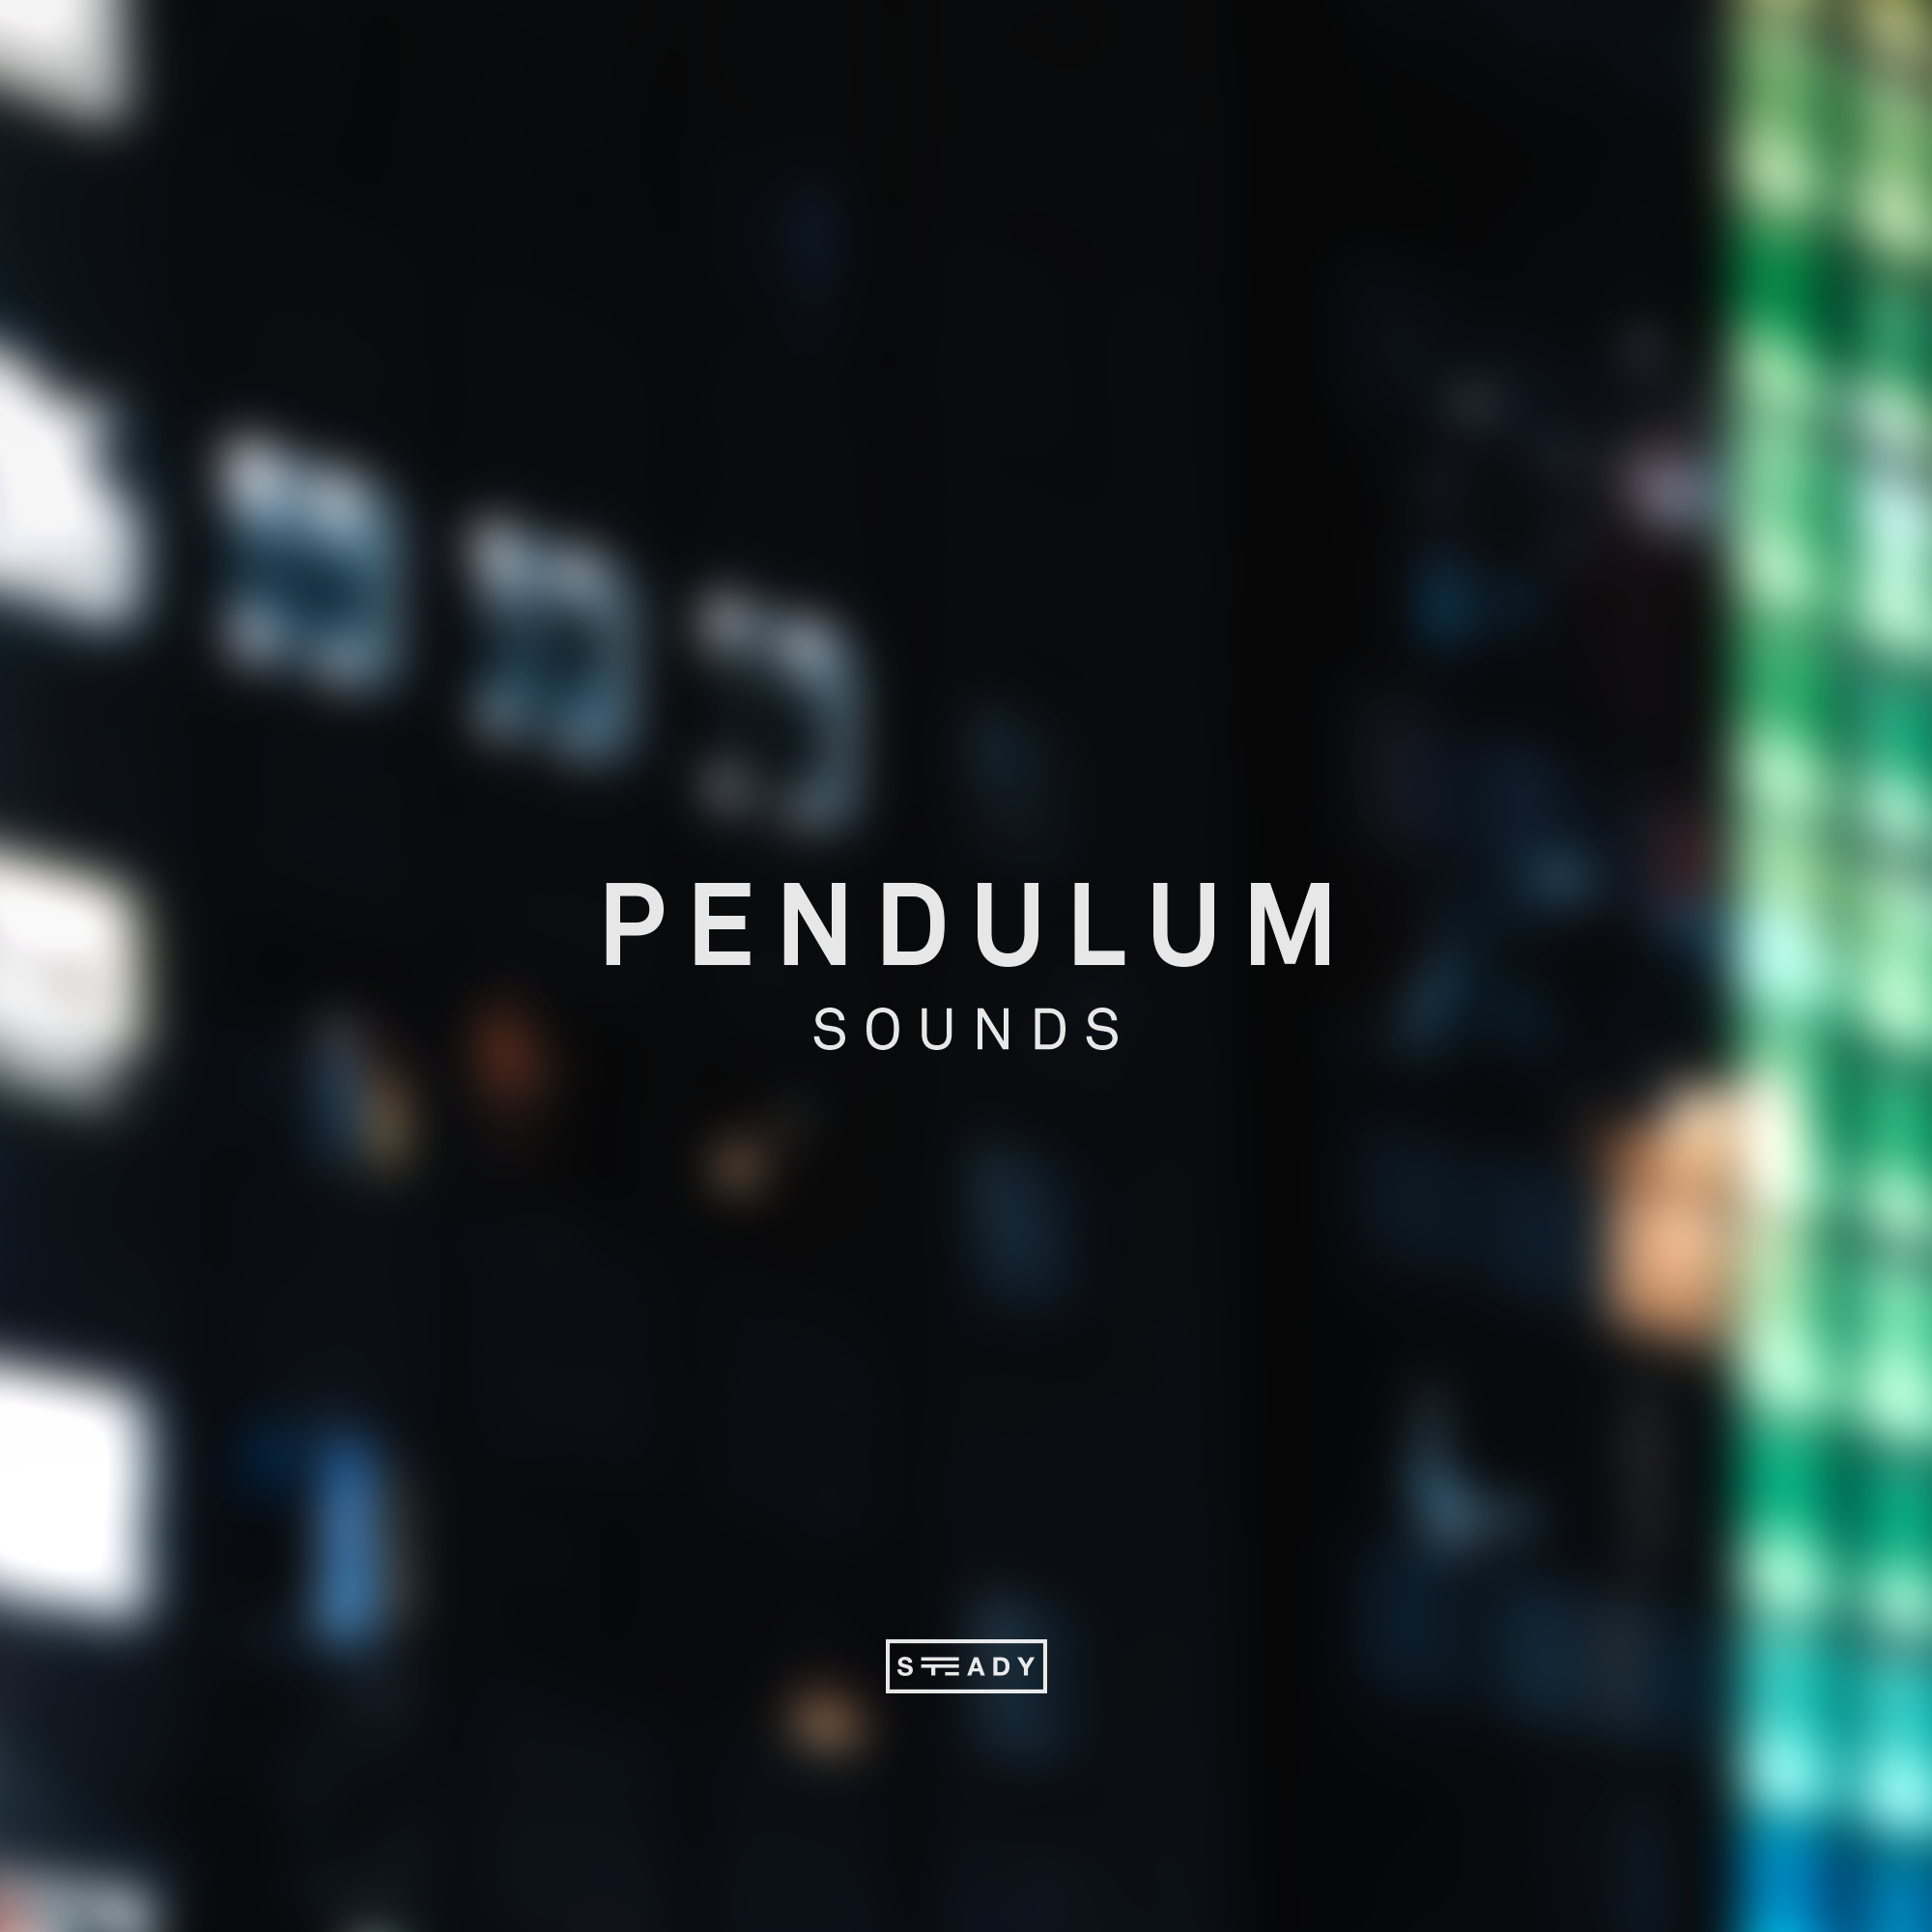 STEADY BUMPIN’: ‘PENDULUM’ SOUNDS